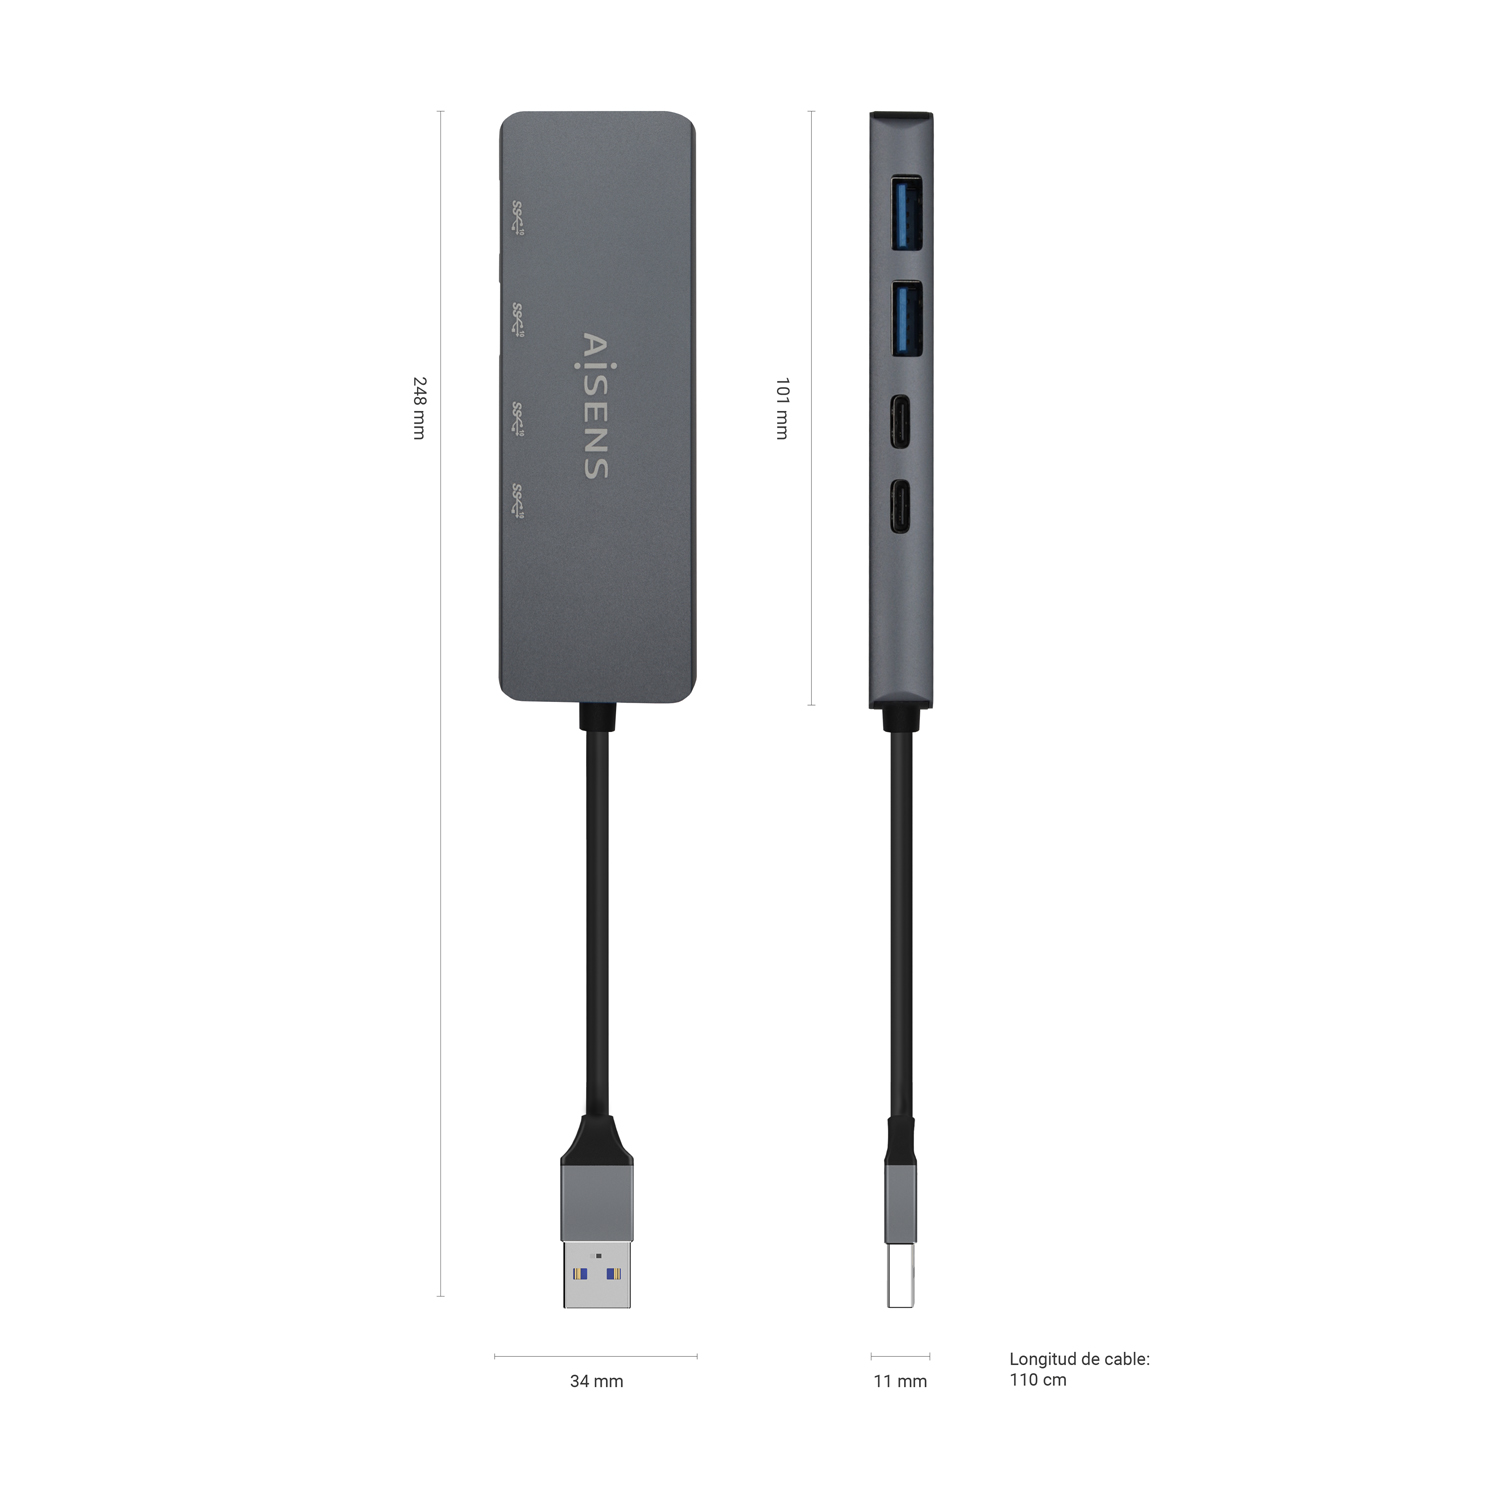 Cable de 15cm Adaptador de Extensión USB 3.0 (5Gbps) - USB-A Macho a USB-A  Hembra - Cable Alargador USB 3.2 Gen1 - Negro